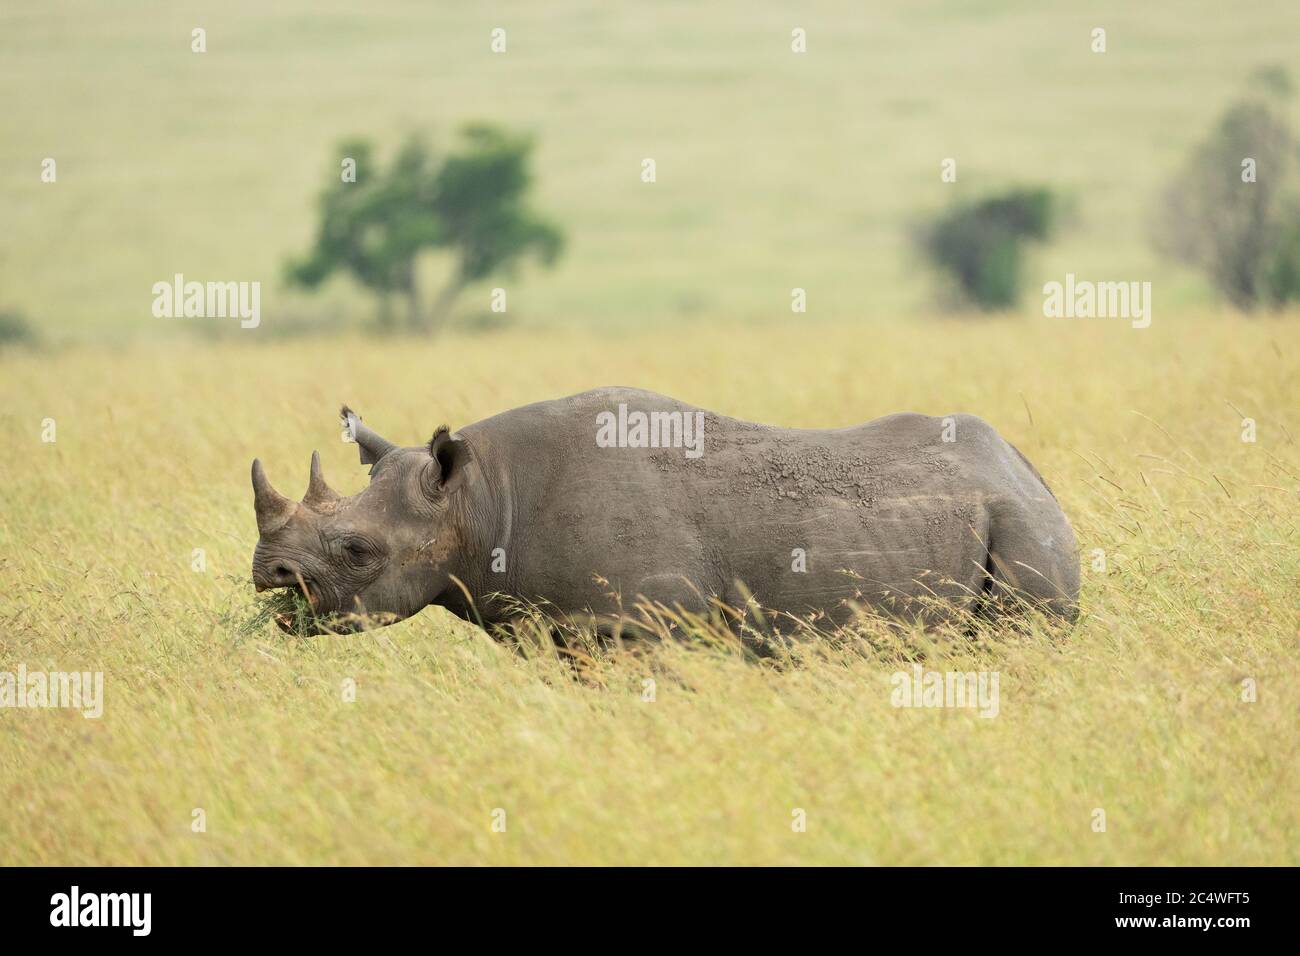 Vue latérale horizontale d'un rhinocéros noir debout et mangeant à Masai Mara au Kenya Banque D'Images